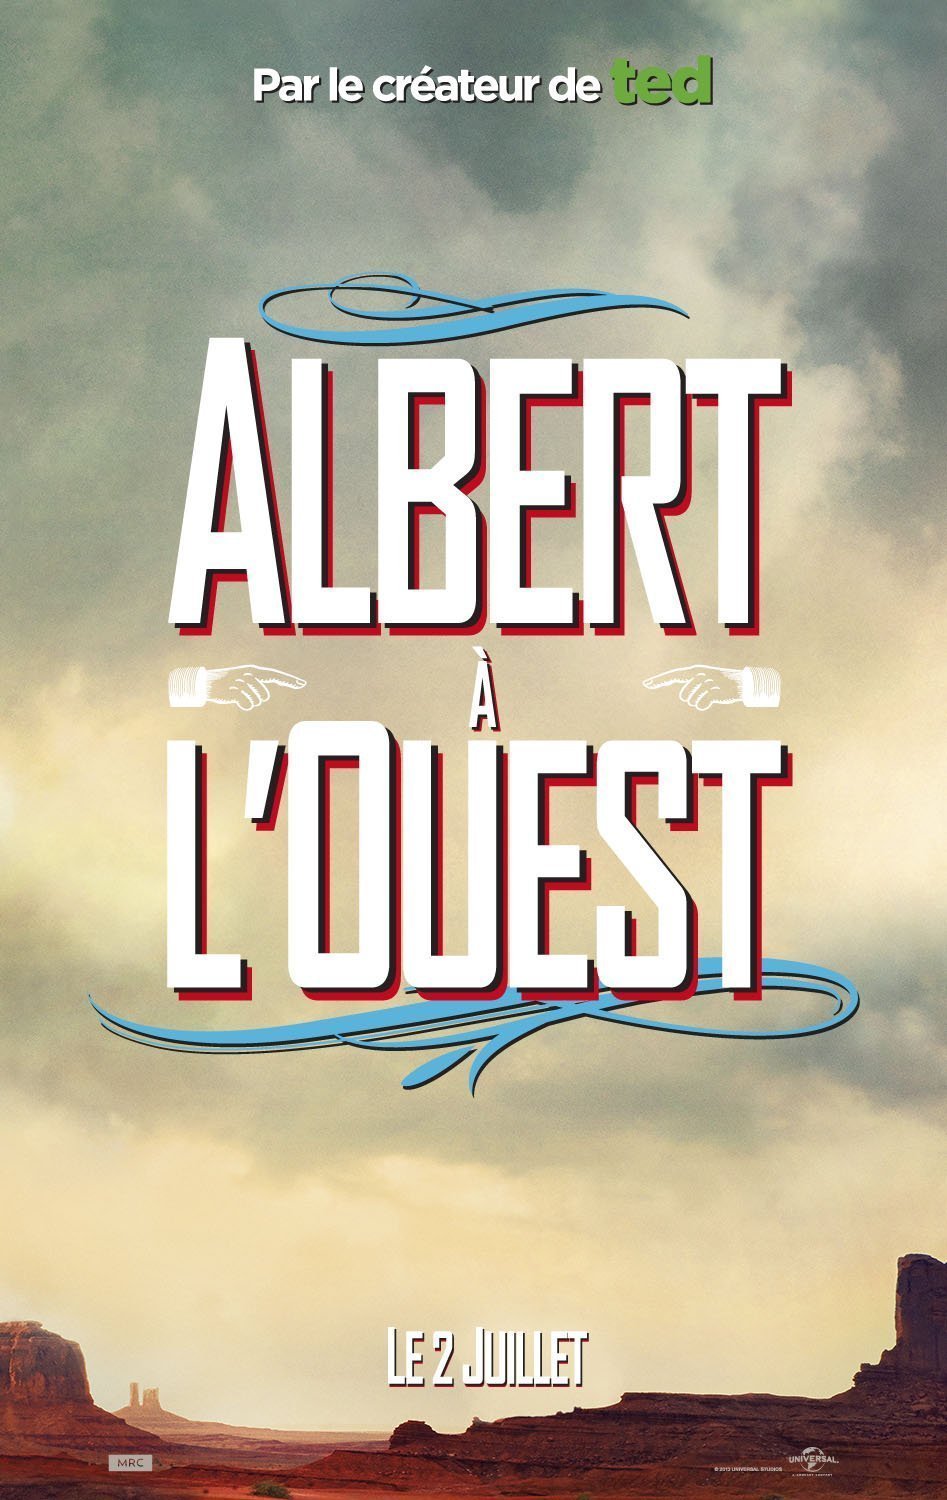 Affiche teaser du film Albert à l'ouest réalisé par Seth MacFarlane